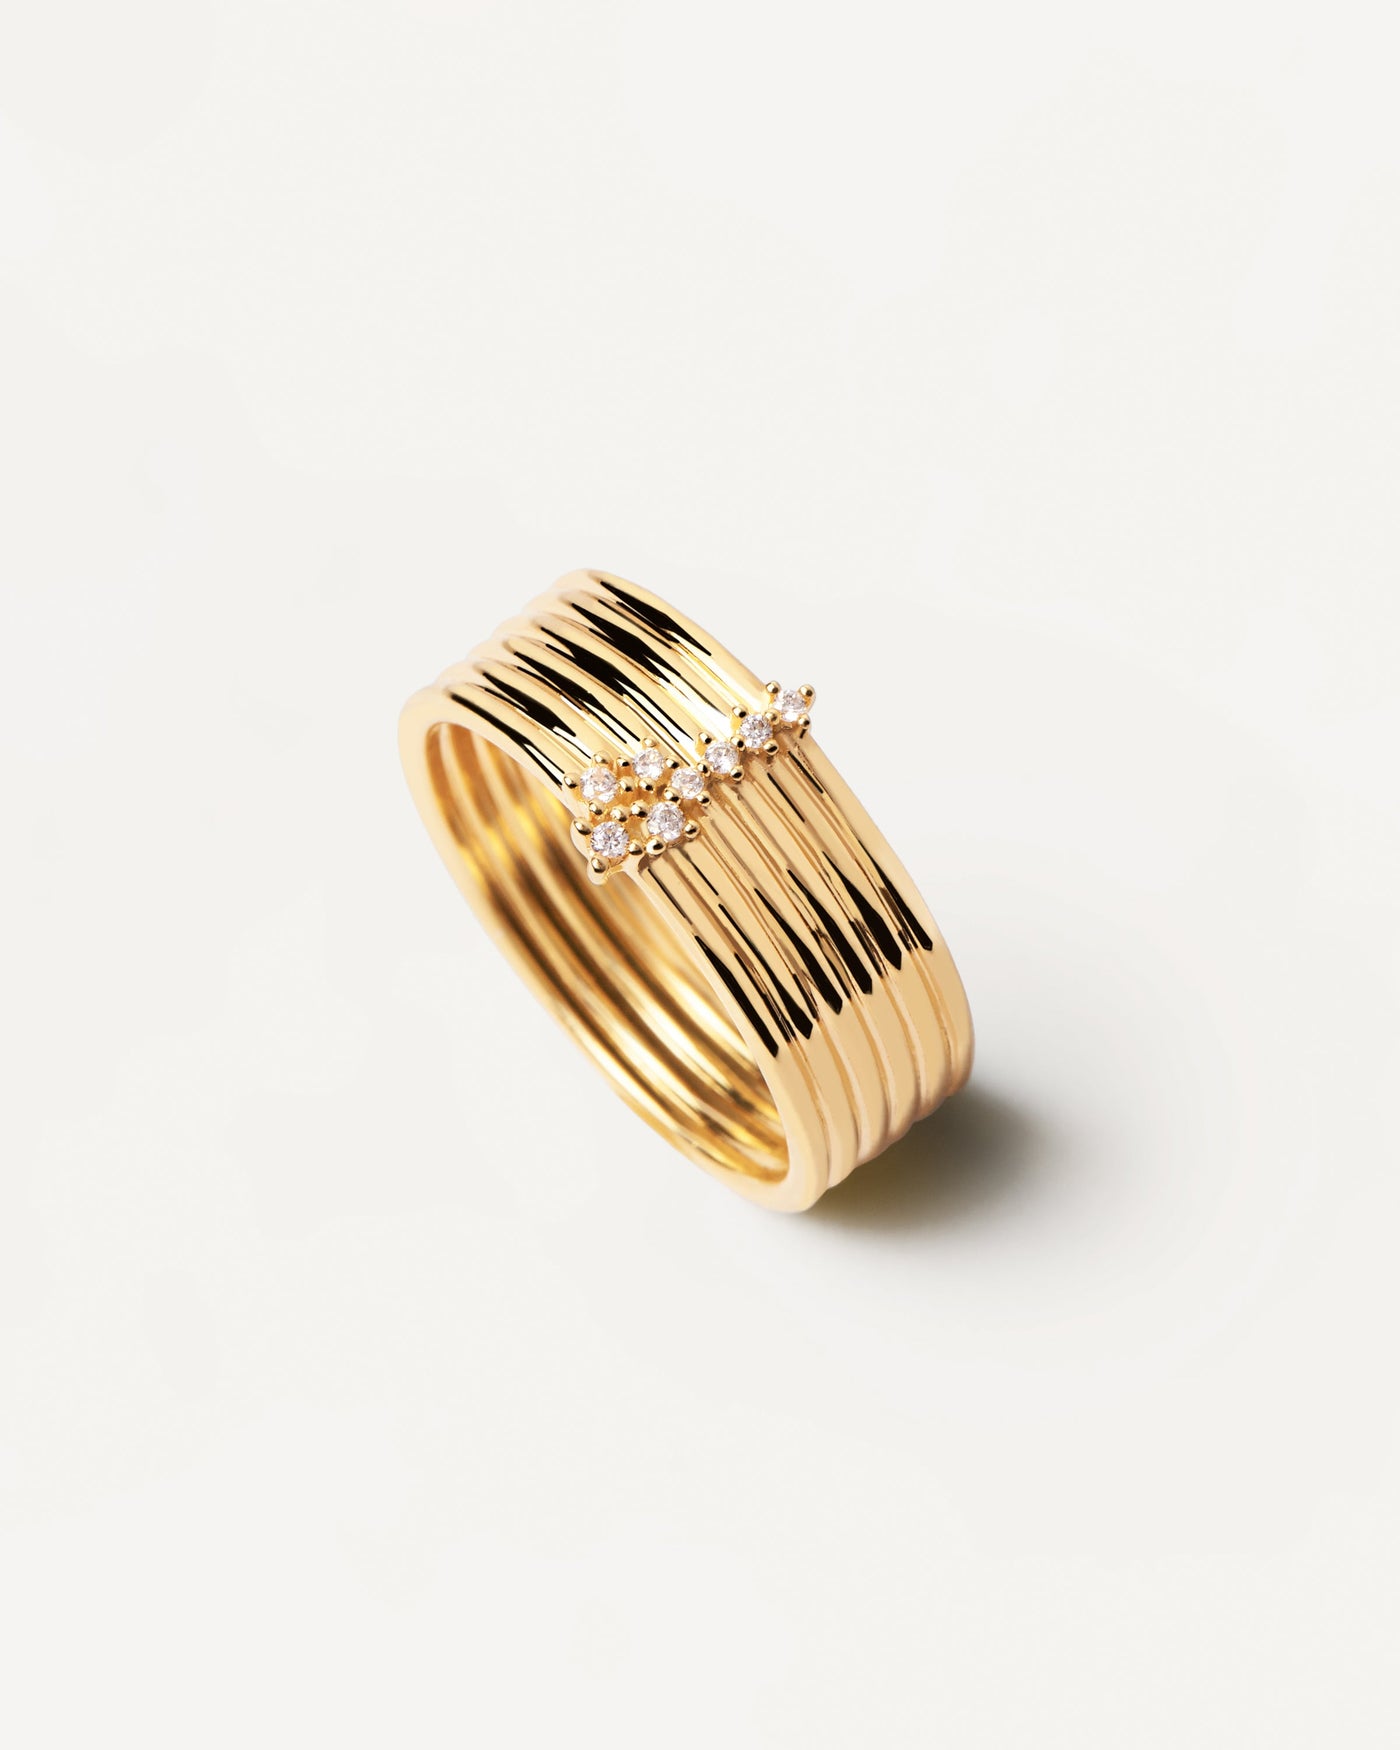 Super Nova Ring. Statement Ring in goldplattiertem Silber mit sechs Bändern und heller Zirkonia. Erhalten Sie die neuesten Produkte von PDPAOLA. Geben Sie Ihre Bestellung sicher auf und erhalten Sie diesen Bestseller.